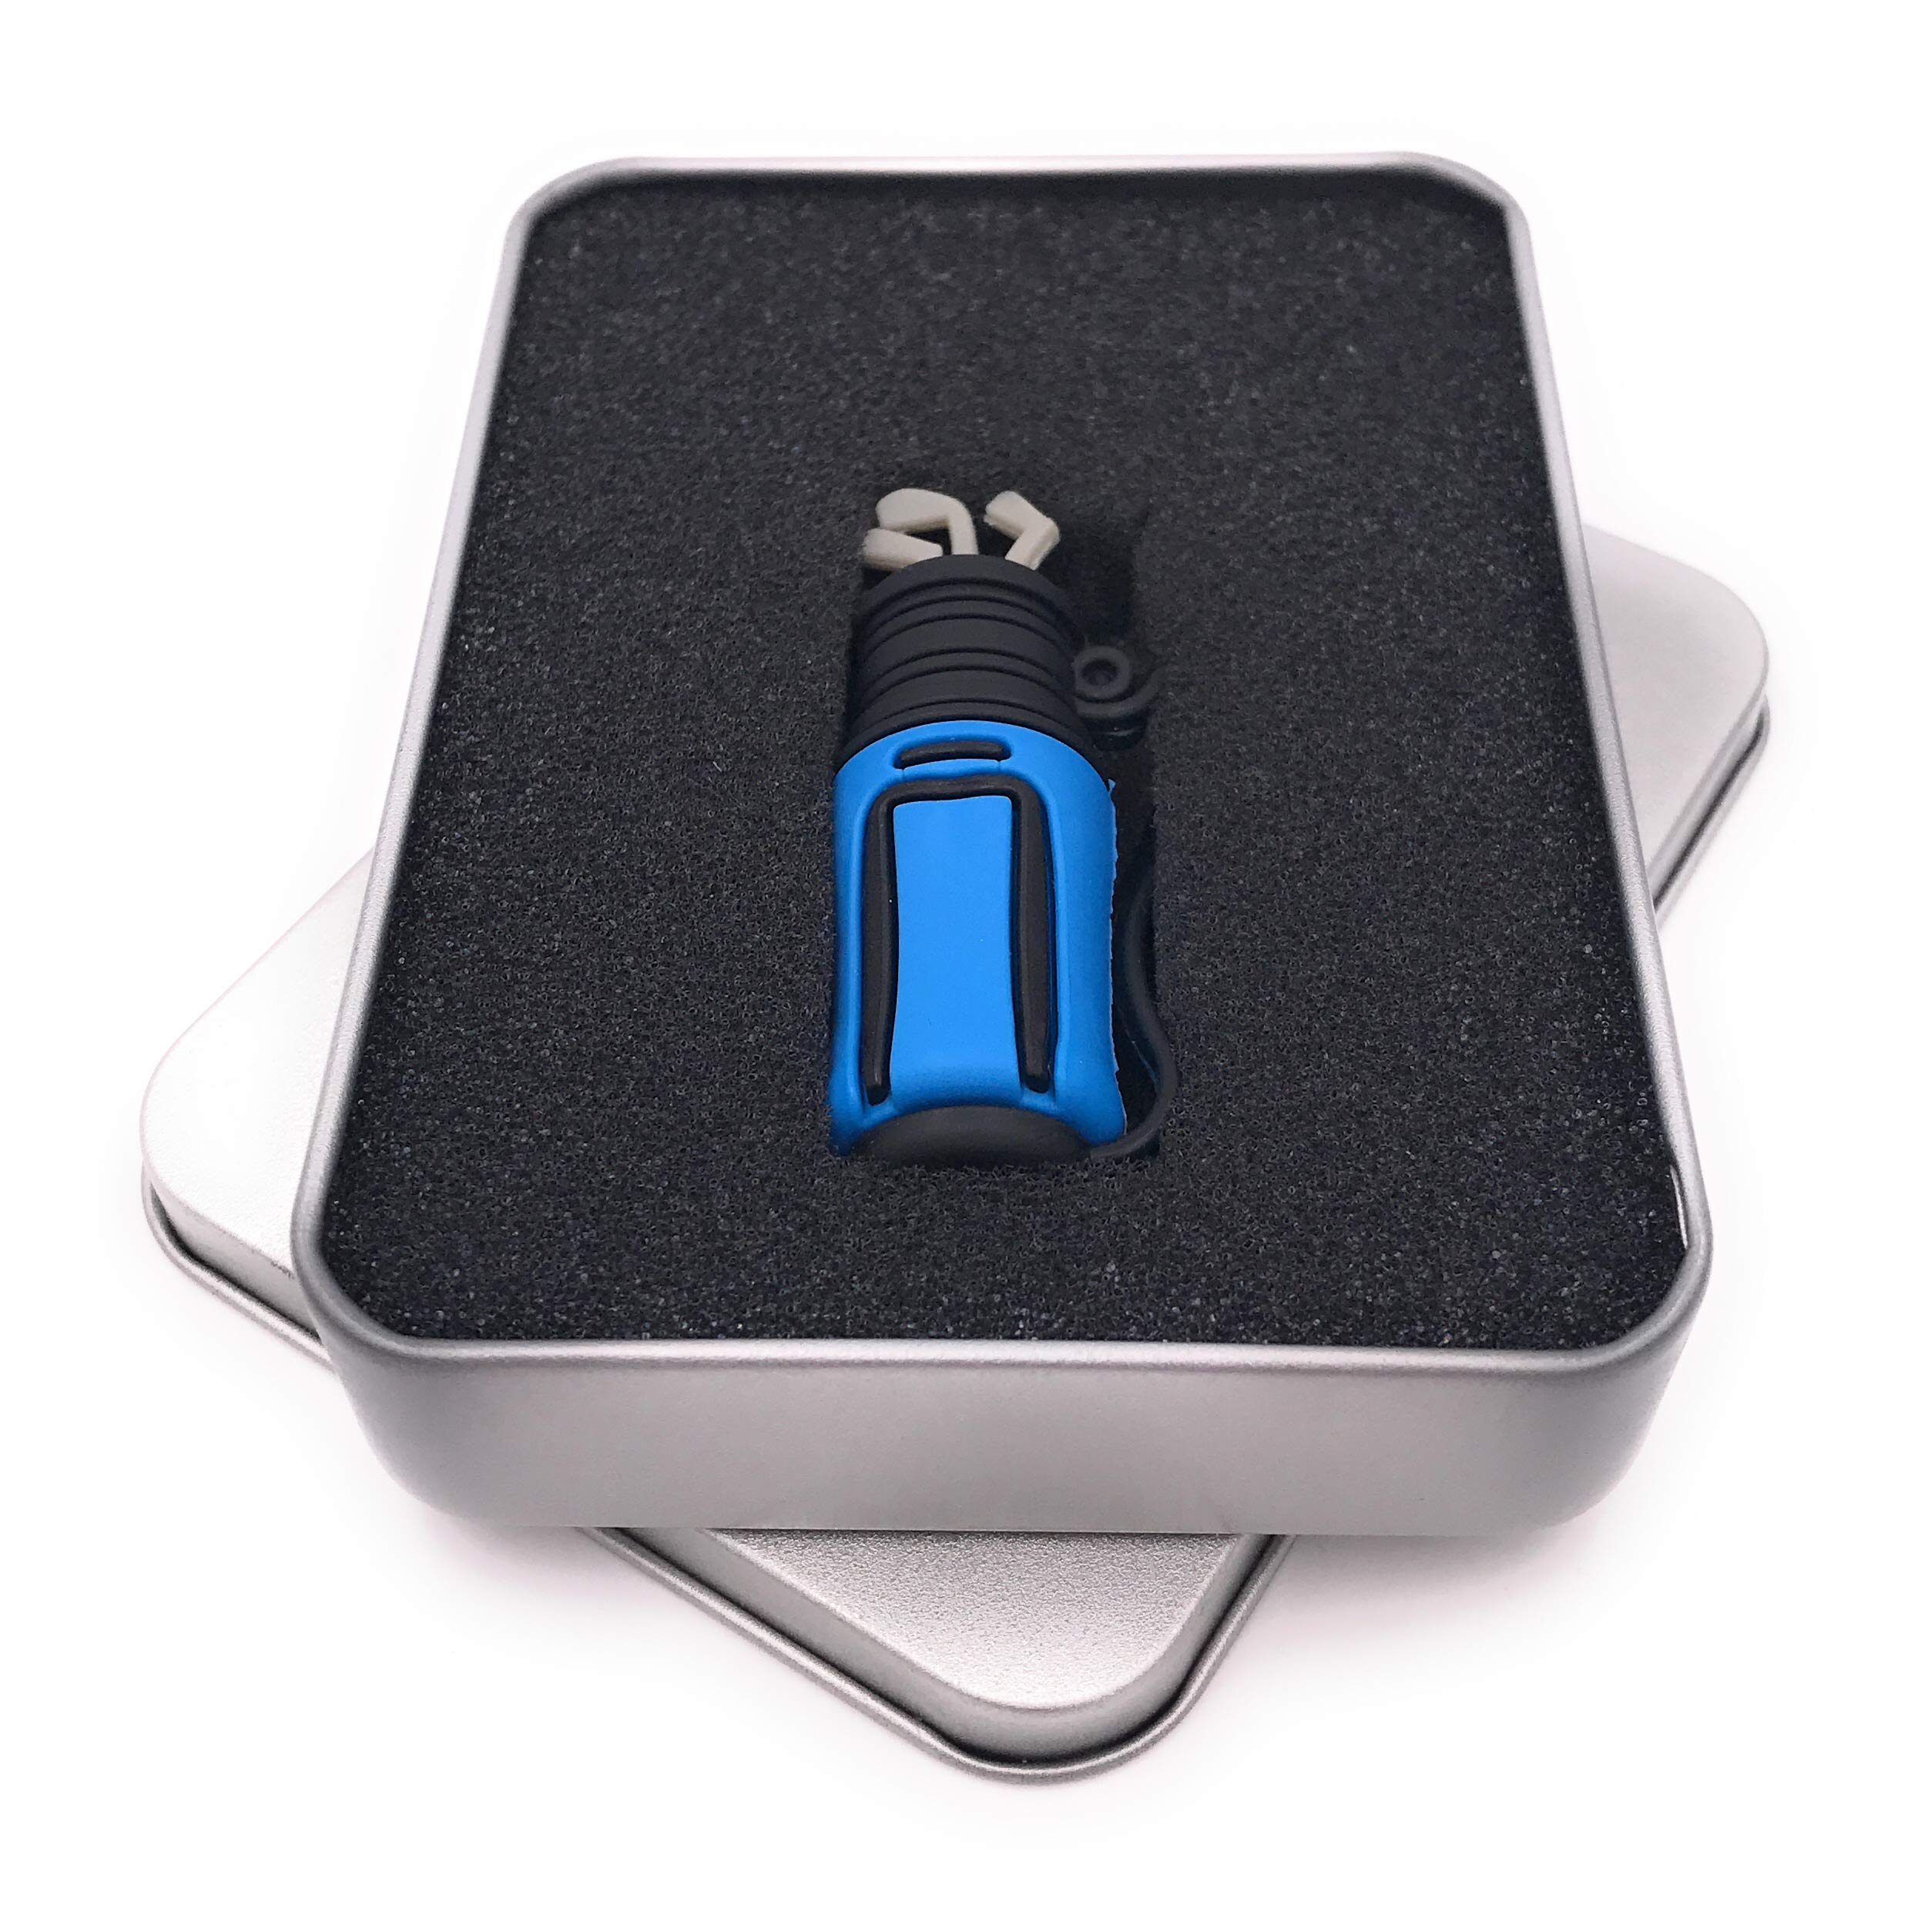 Onwomania Golftasche Tasche Beutel Golfschläger blau USB Stick in Alu Geschenkbox 64 GB USB 3.0